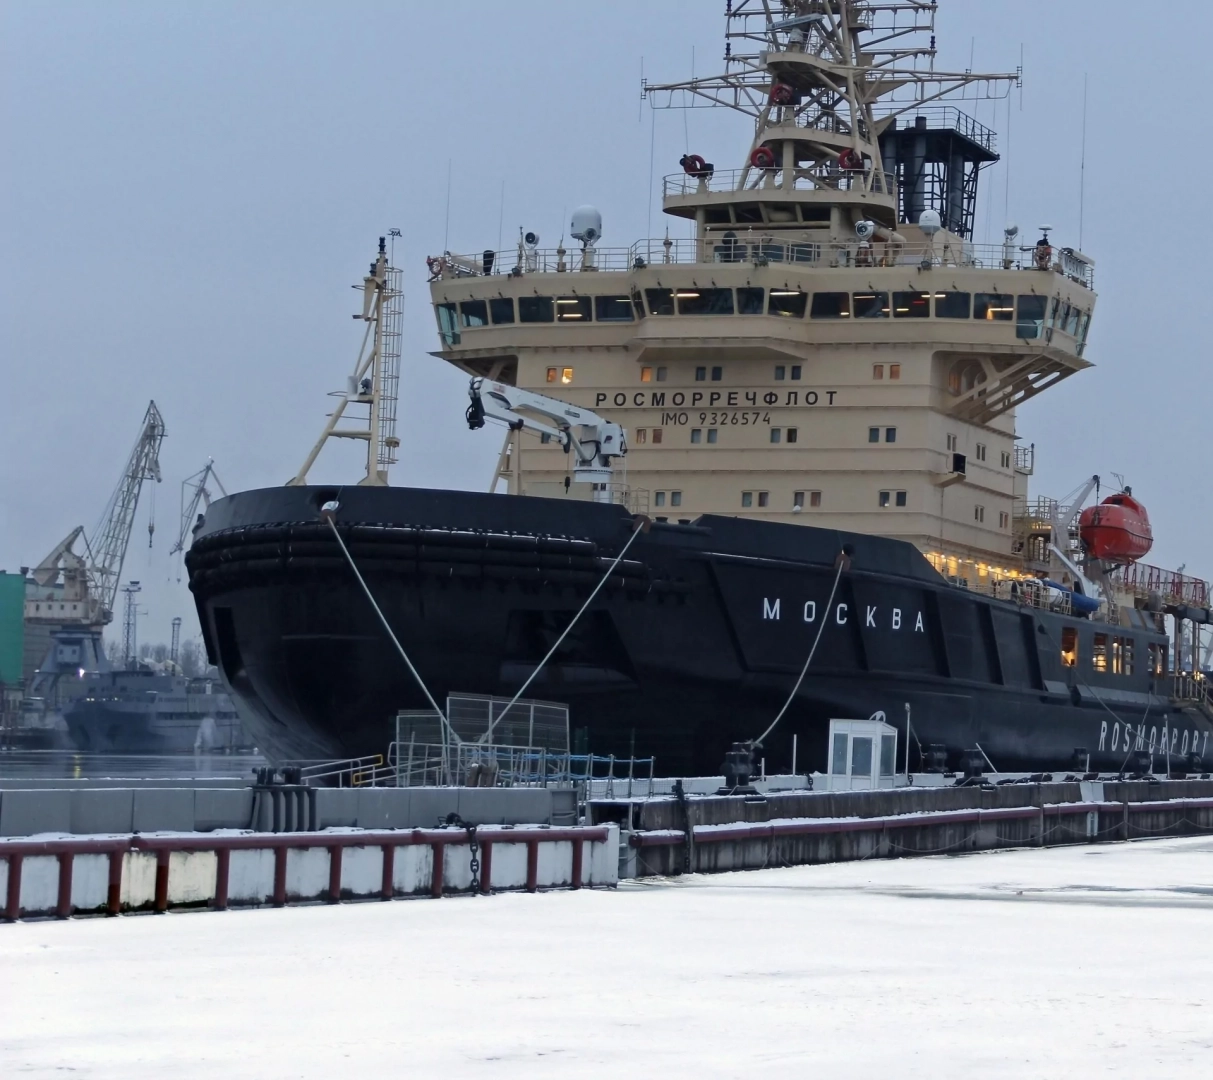 为 《莫斯科》号破冰船喷漆提供材料 AKRUS ®